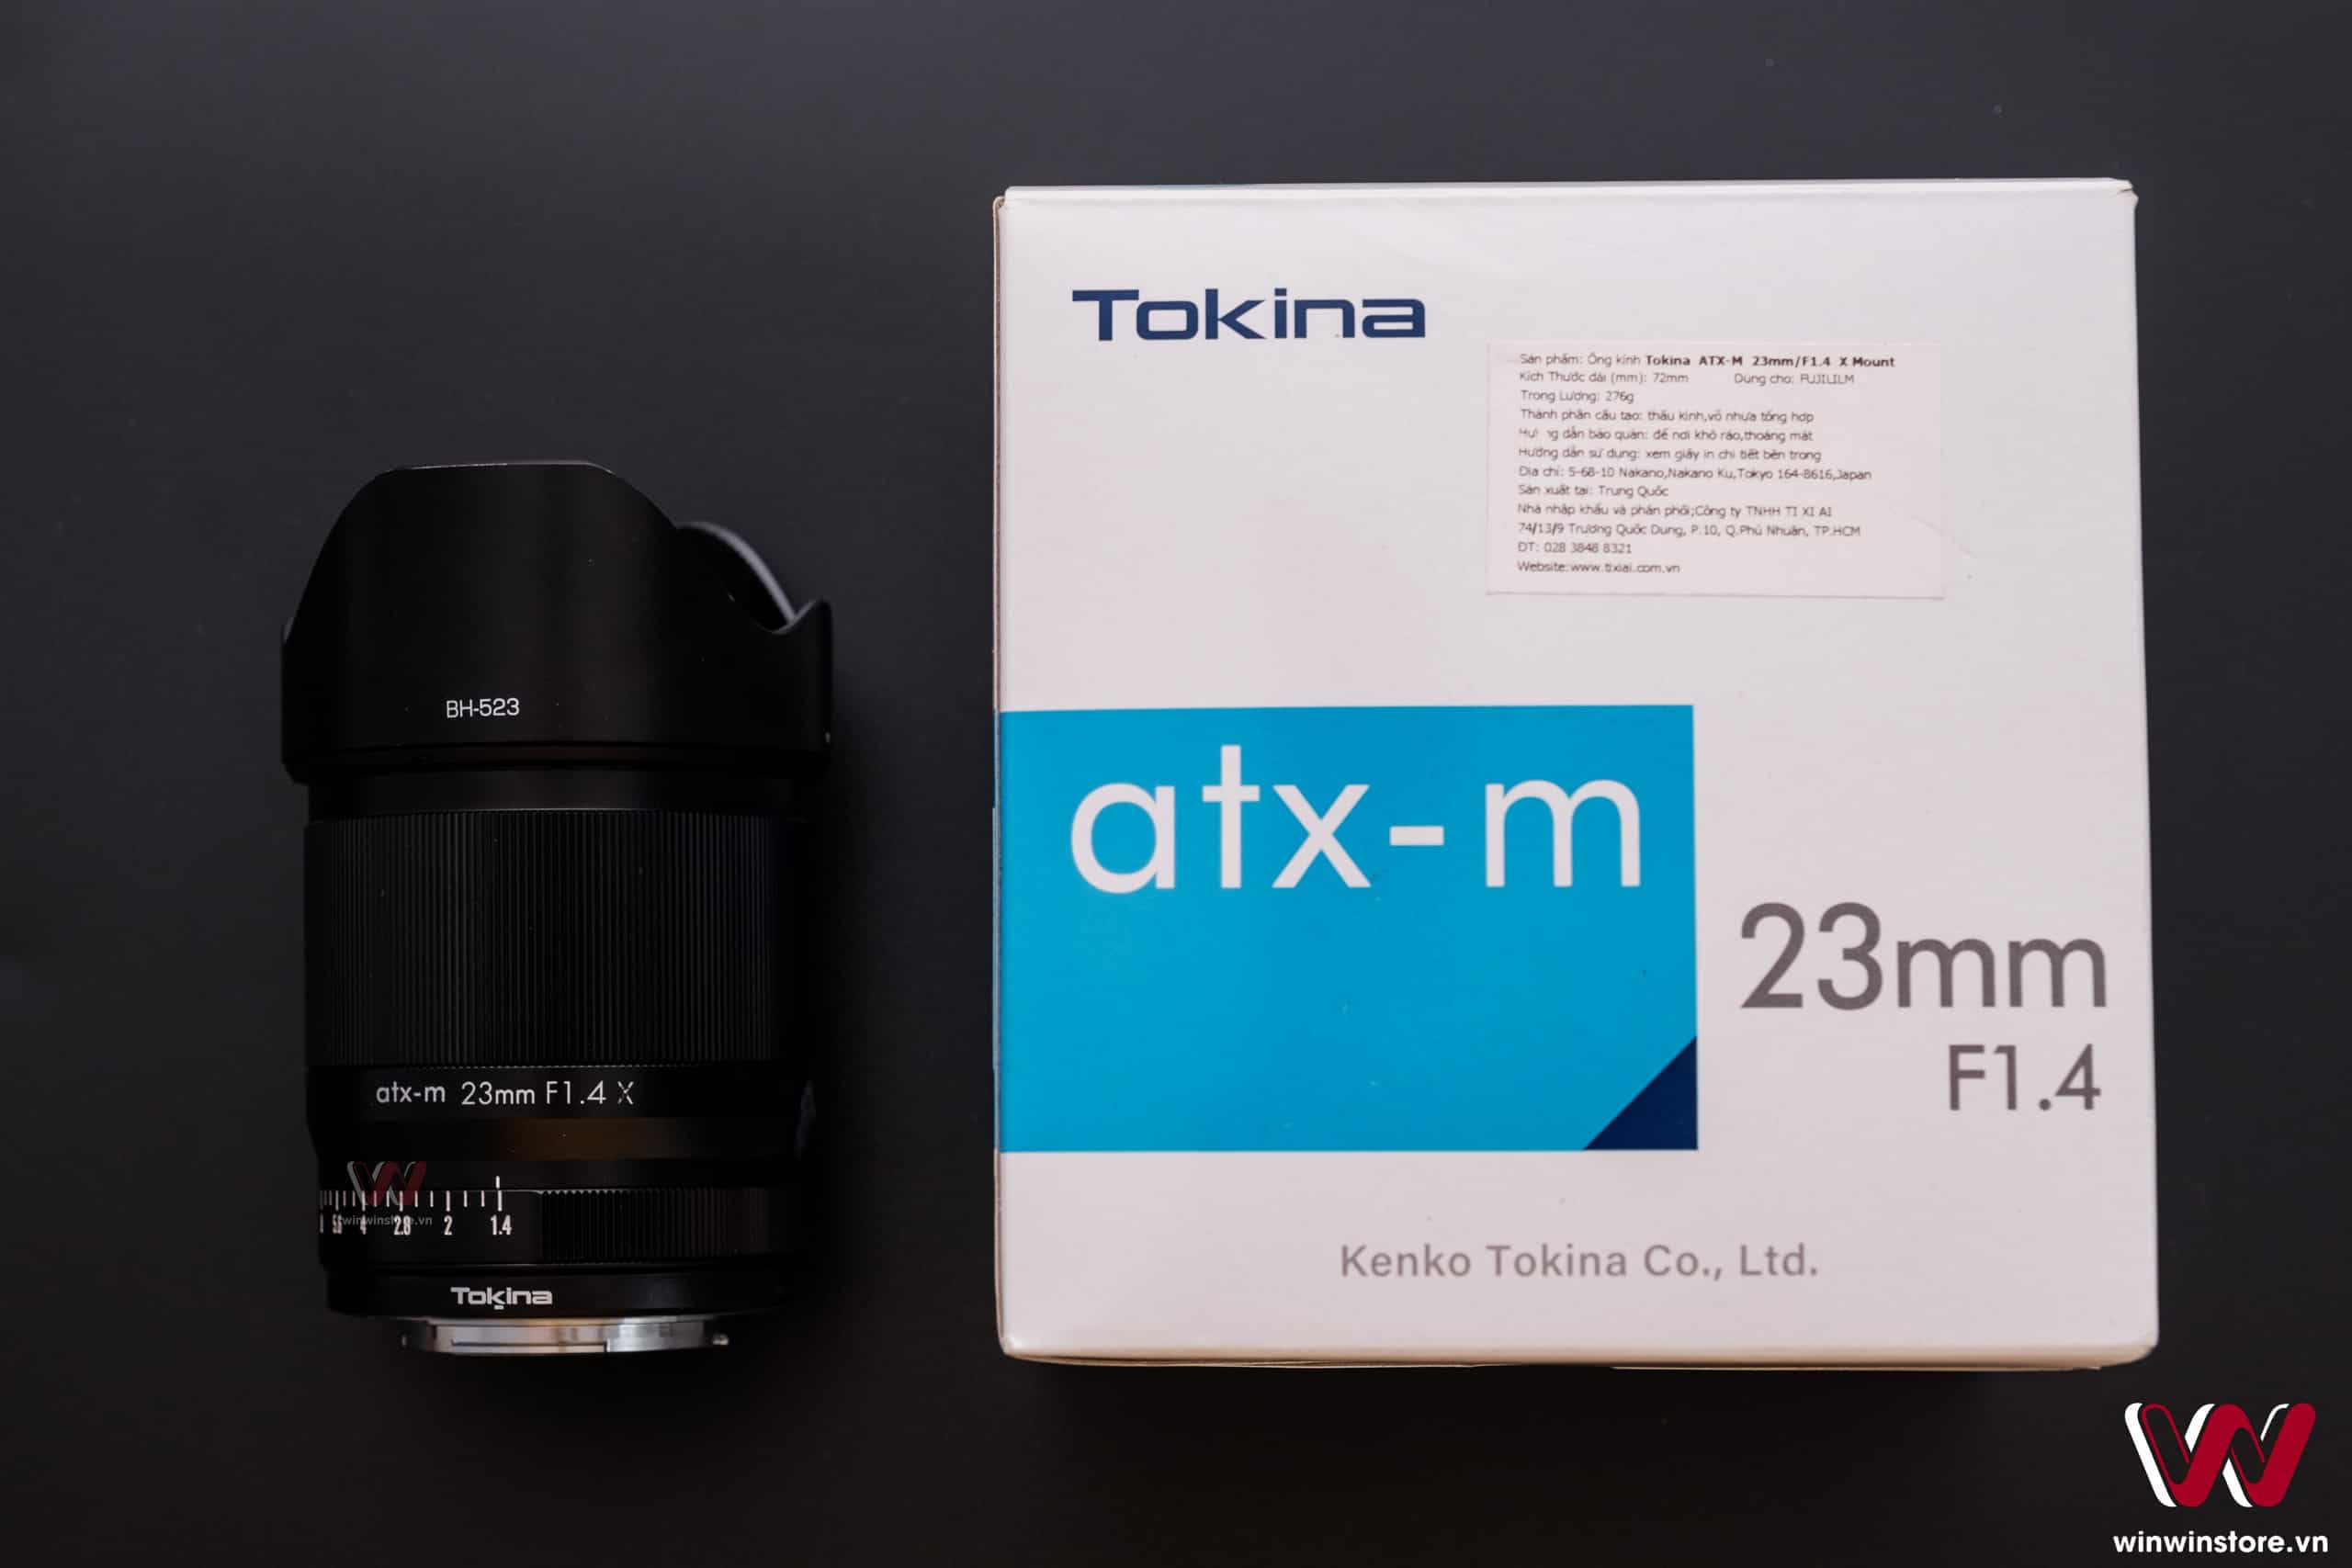 Trên tay bộ ba ống kính Tokina 23mm F1.4, 33mm F1.4 và 56mm F1.4 dành cho máy ảnh Fujifilm ngàm X